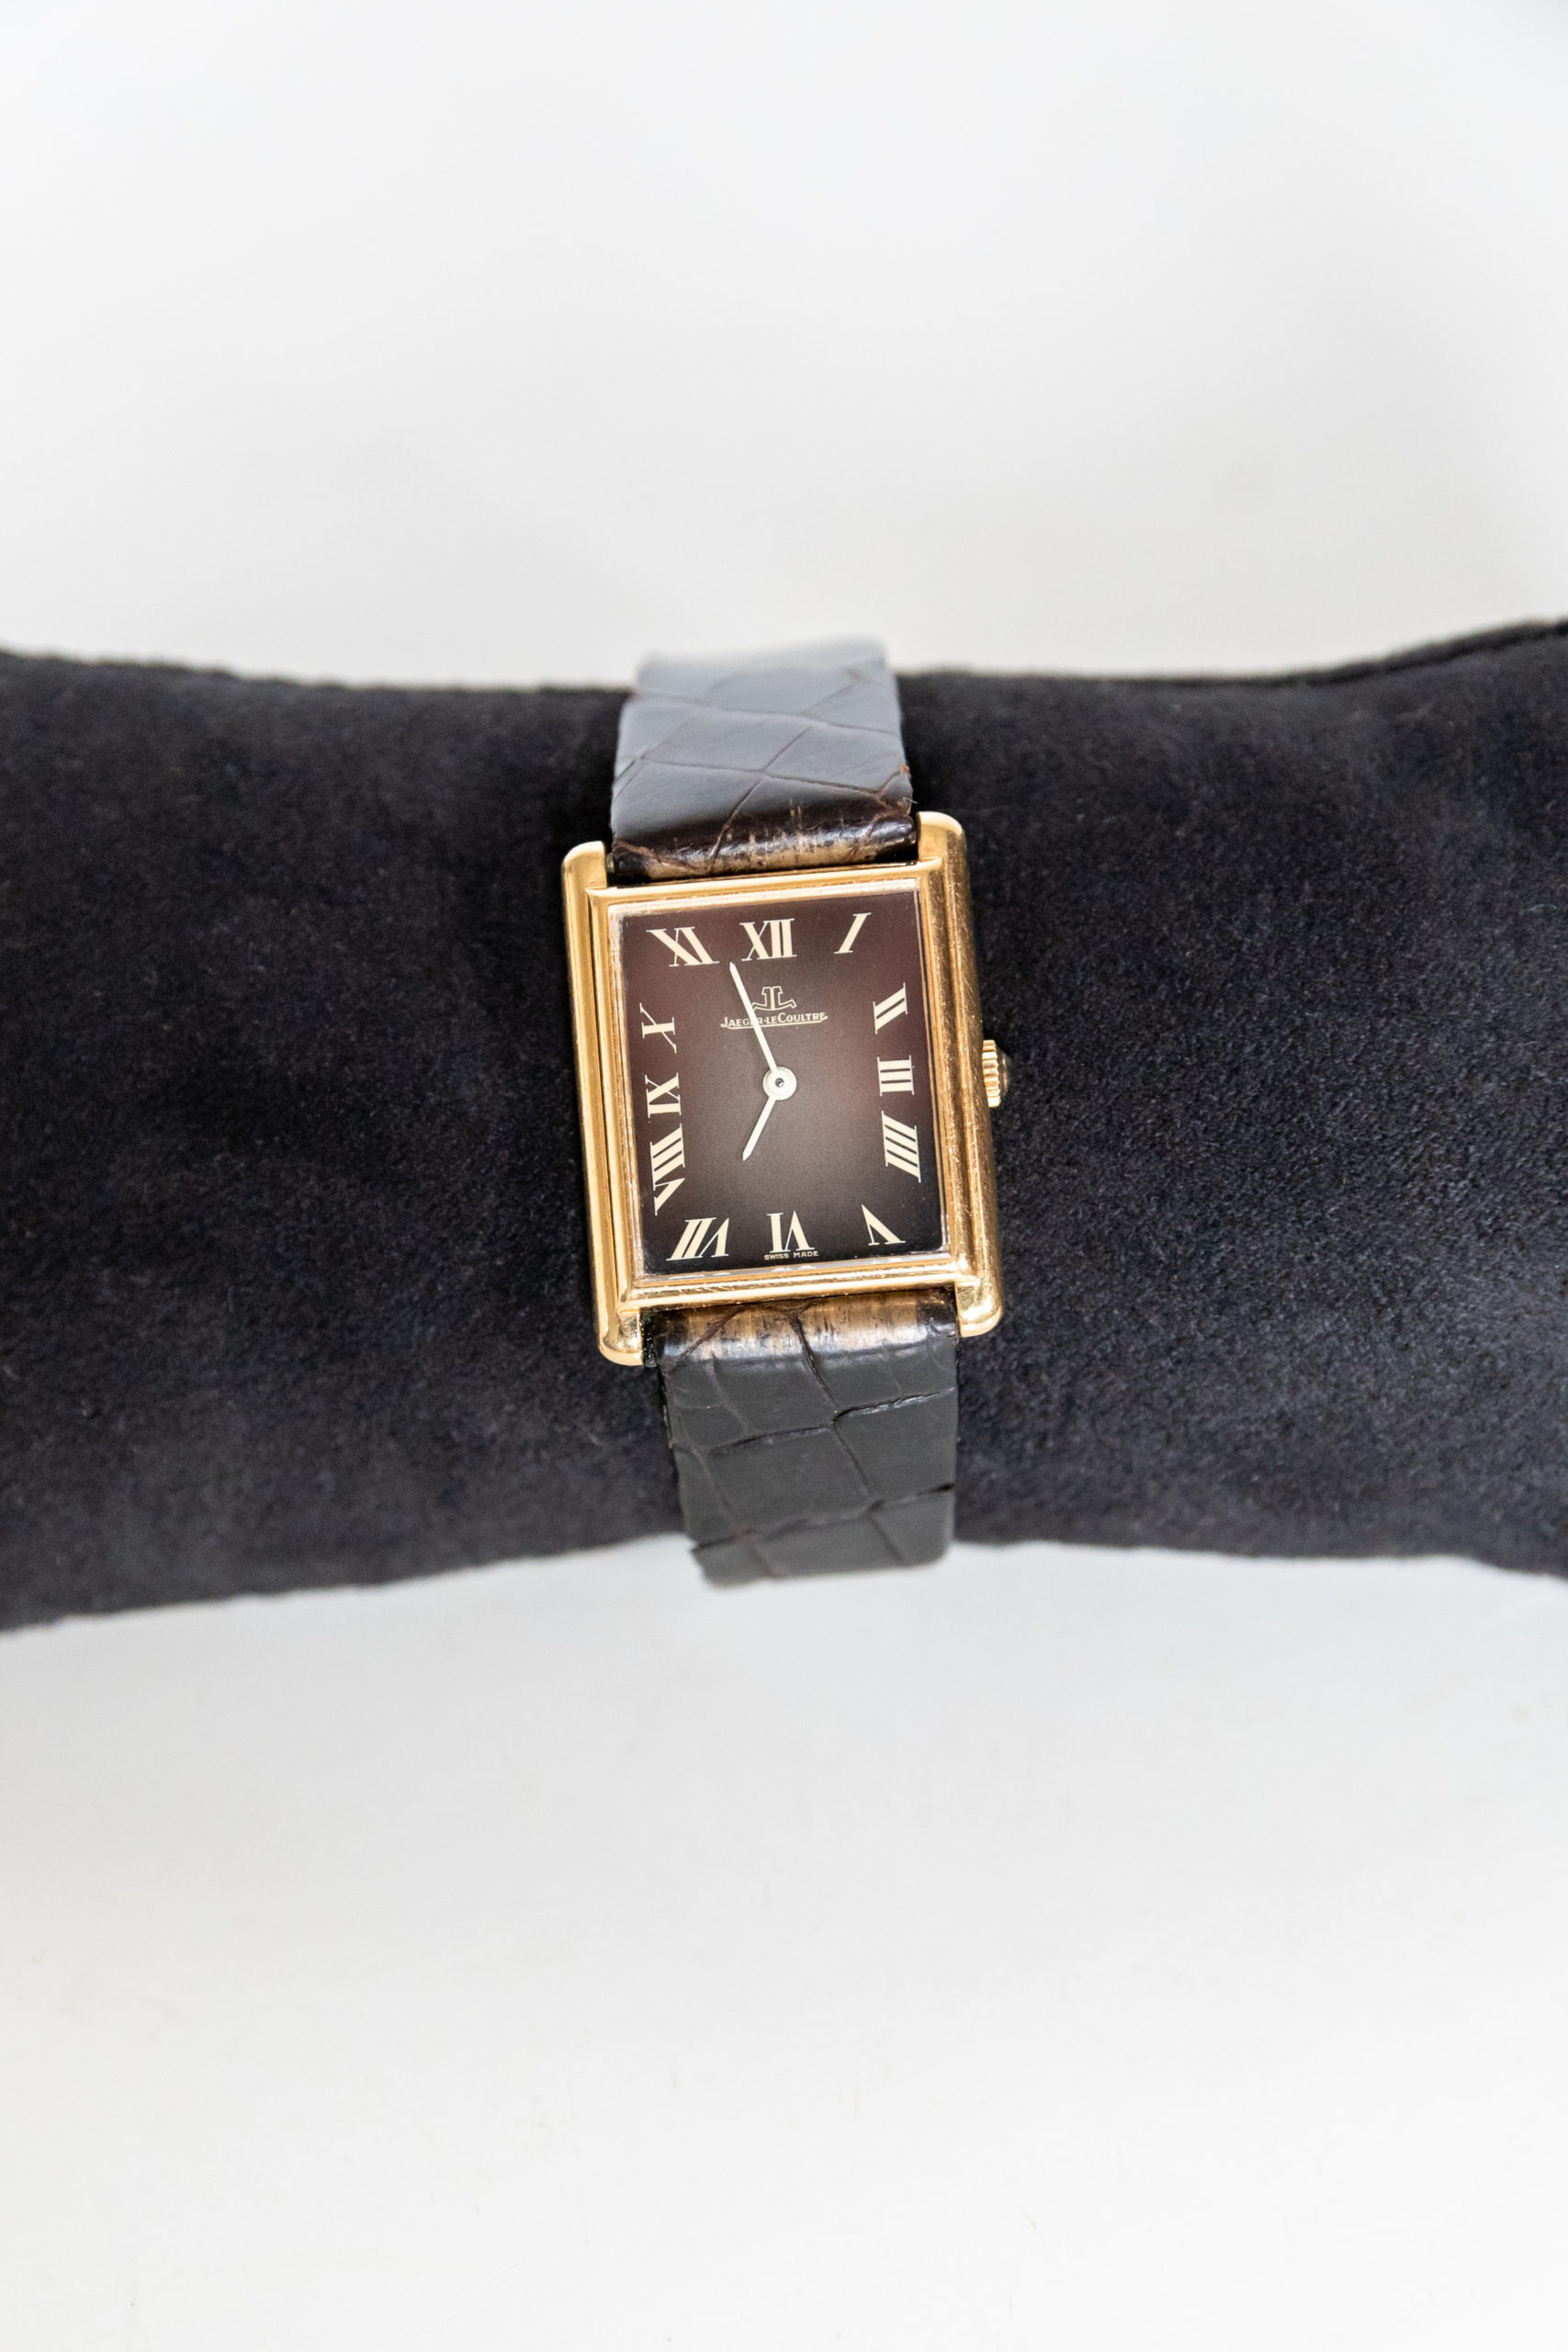 Jeager-lecoultre-homme-femme-collection-montre-vintage-or-aurore-morisse-chestret5-la-maison-de-chestret-liège-affaire-conclue1